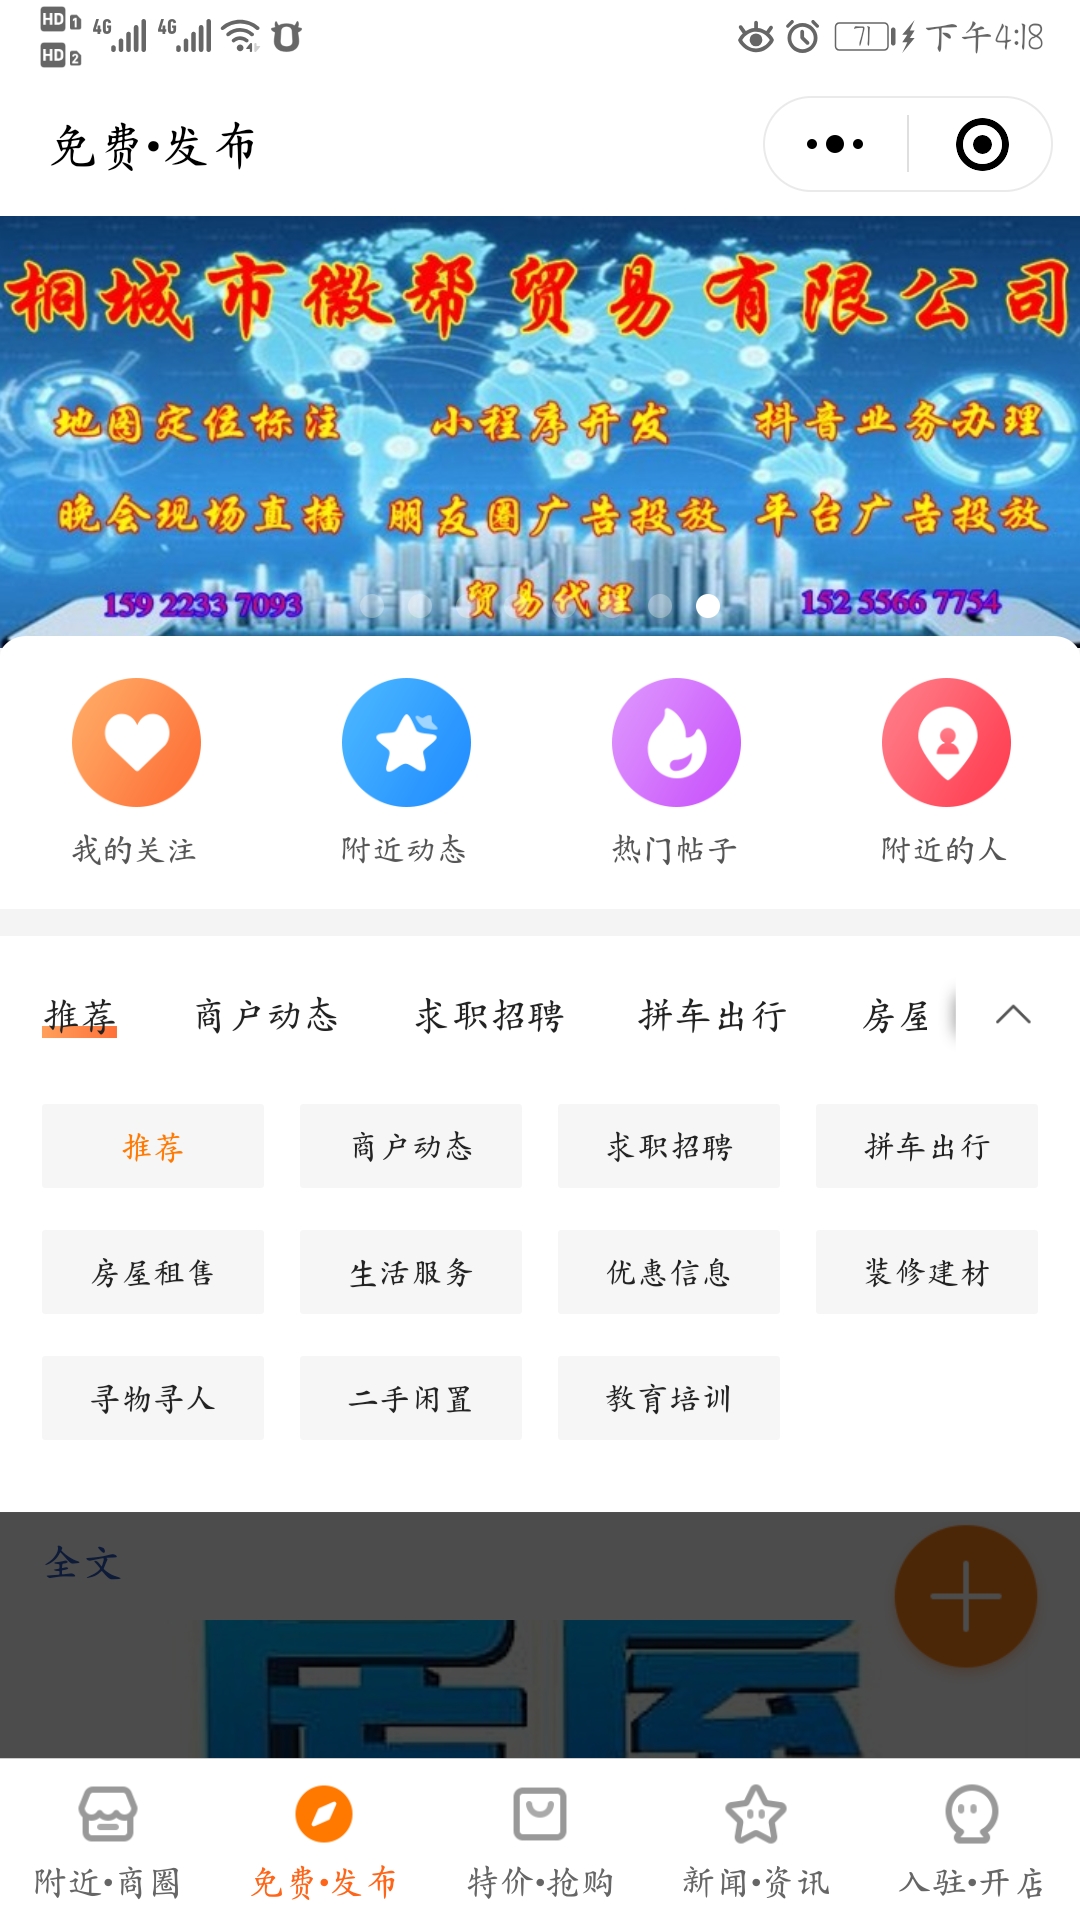 桐城便民信息服务平台